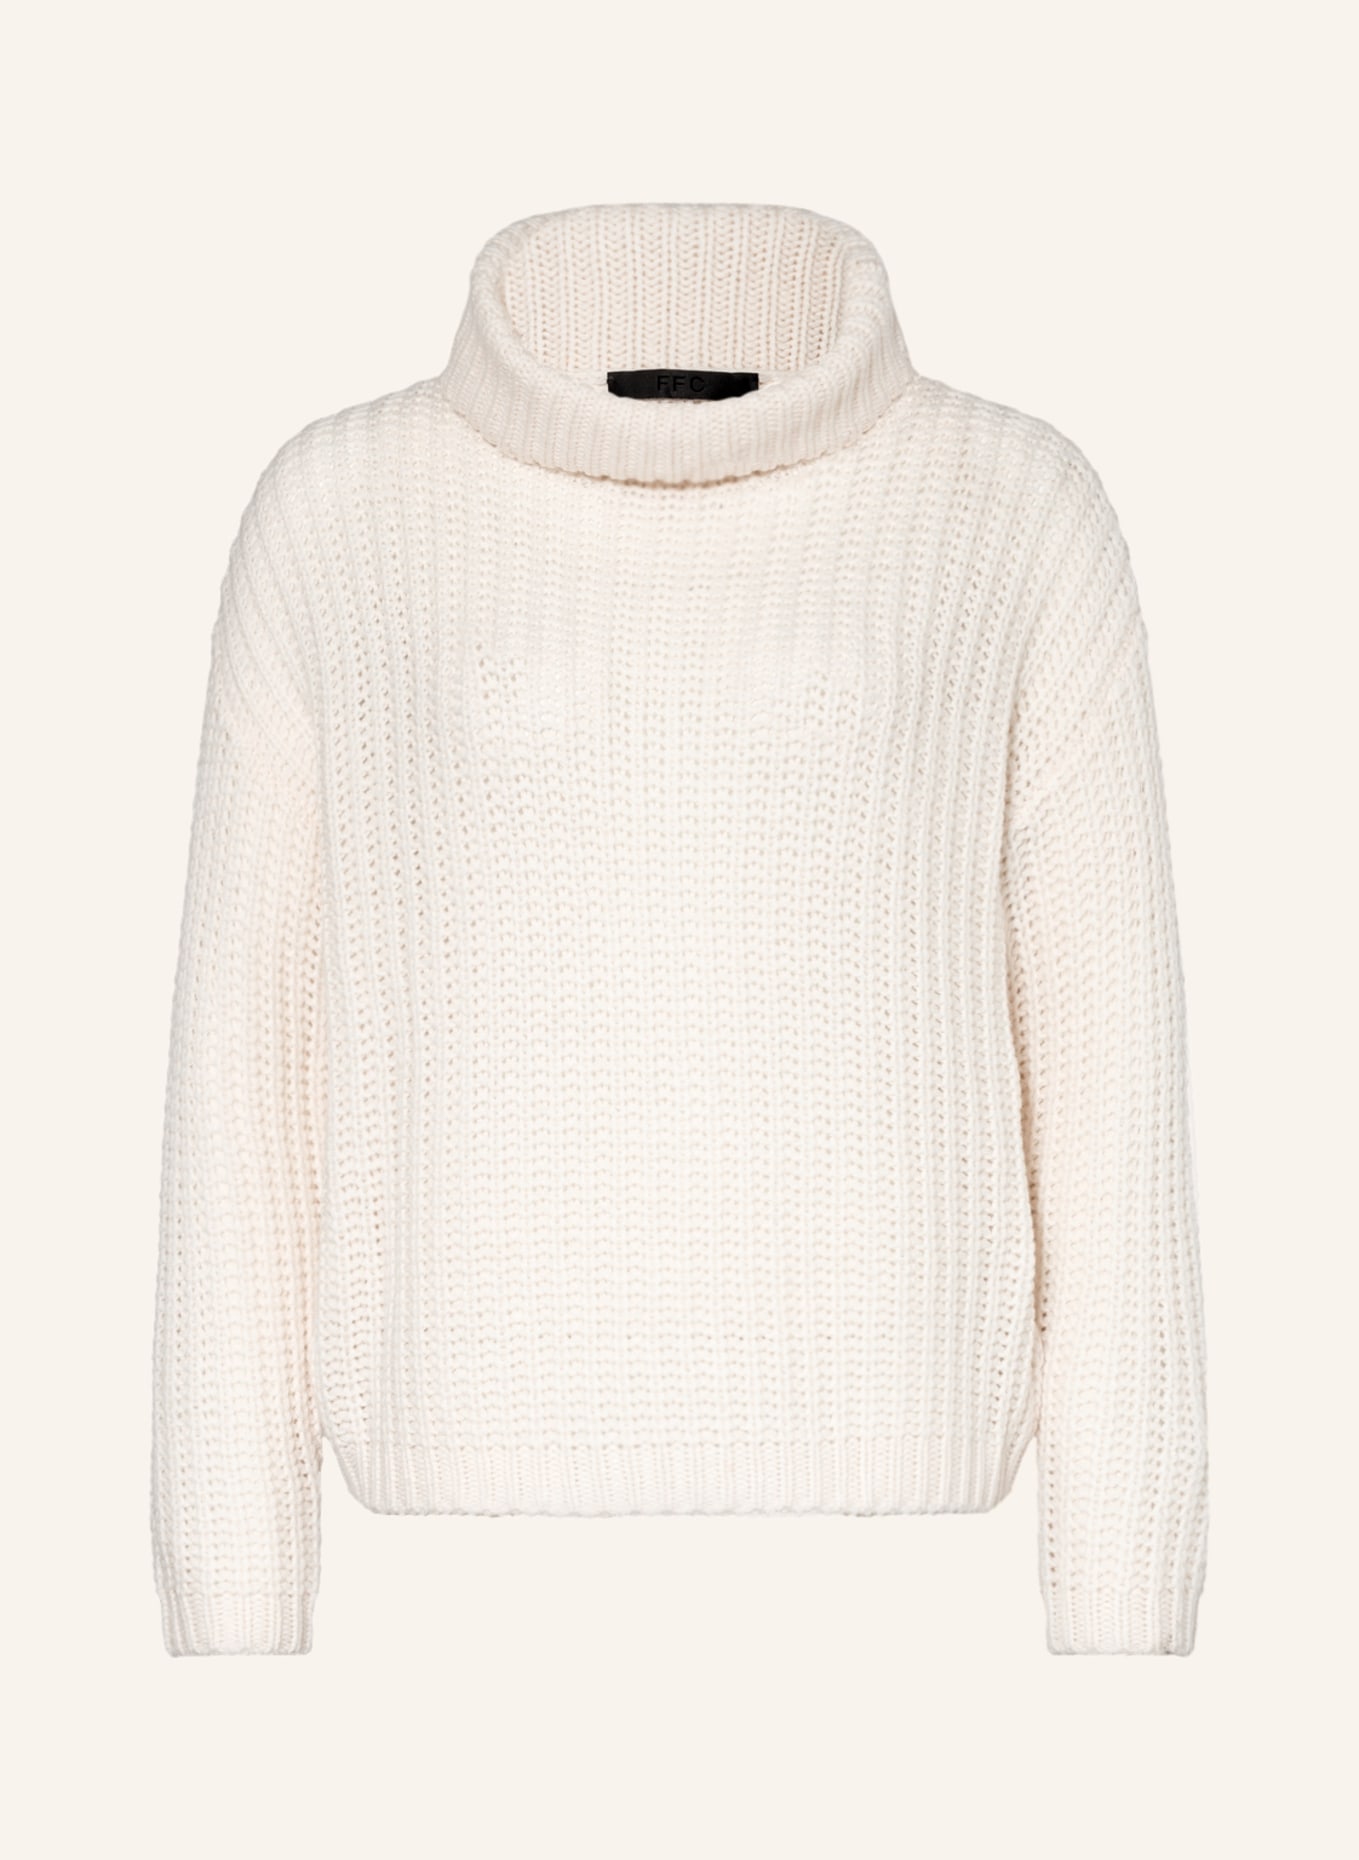 FFC Turtleneck sweater, Color: ECRU (Image 1)